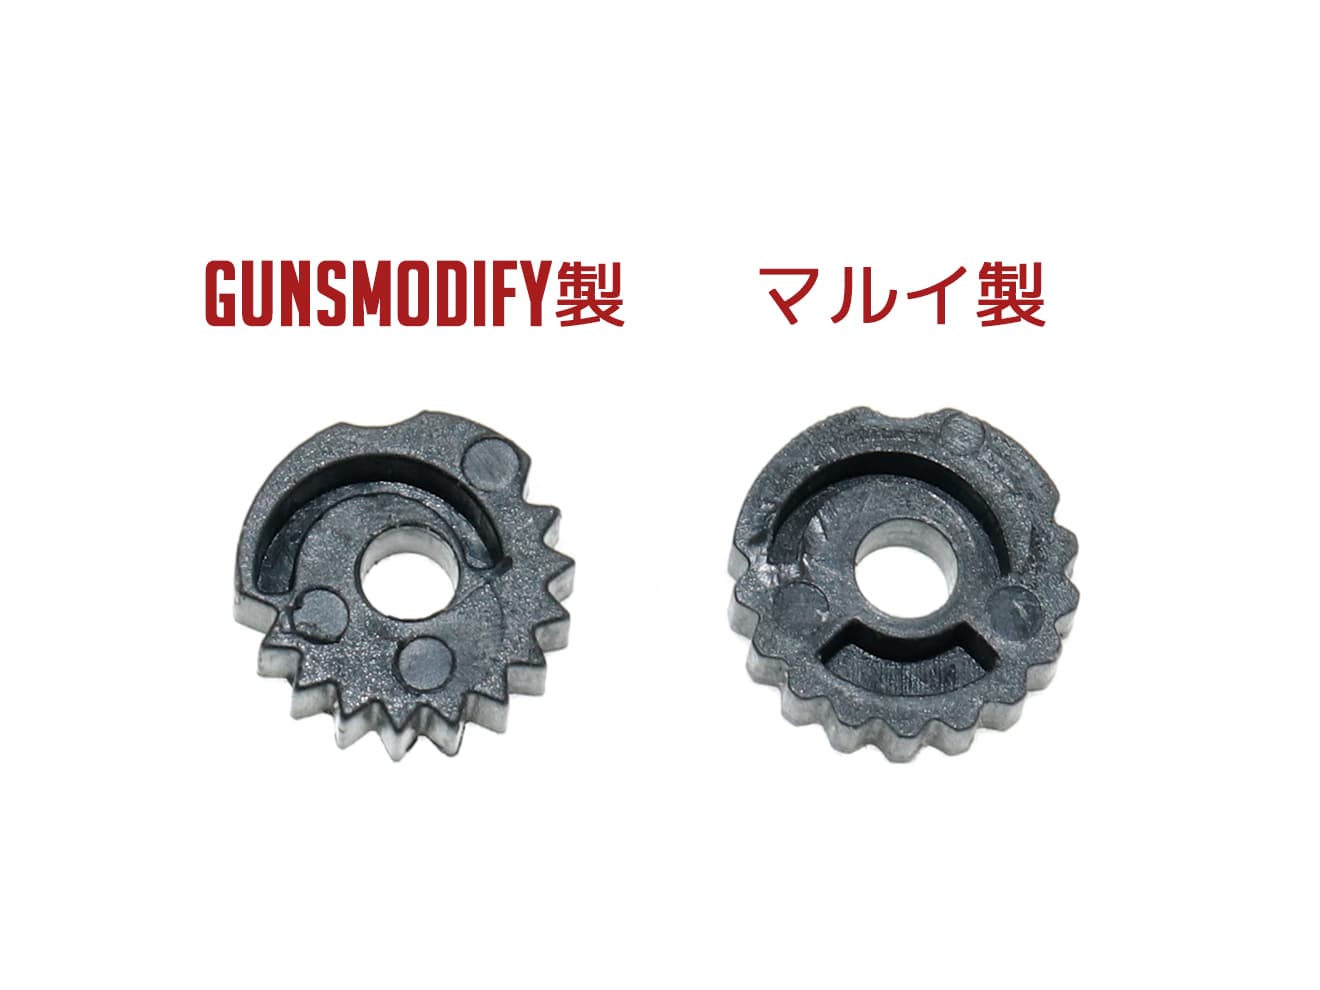 Guns Modify ポリマー ホップアップ アジャストダイアル for GLOCK